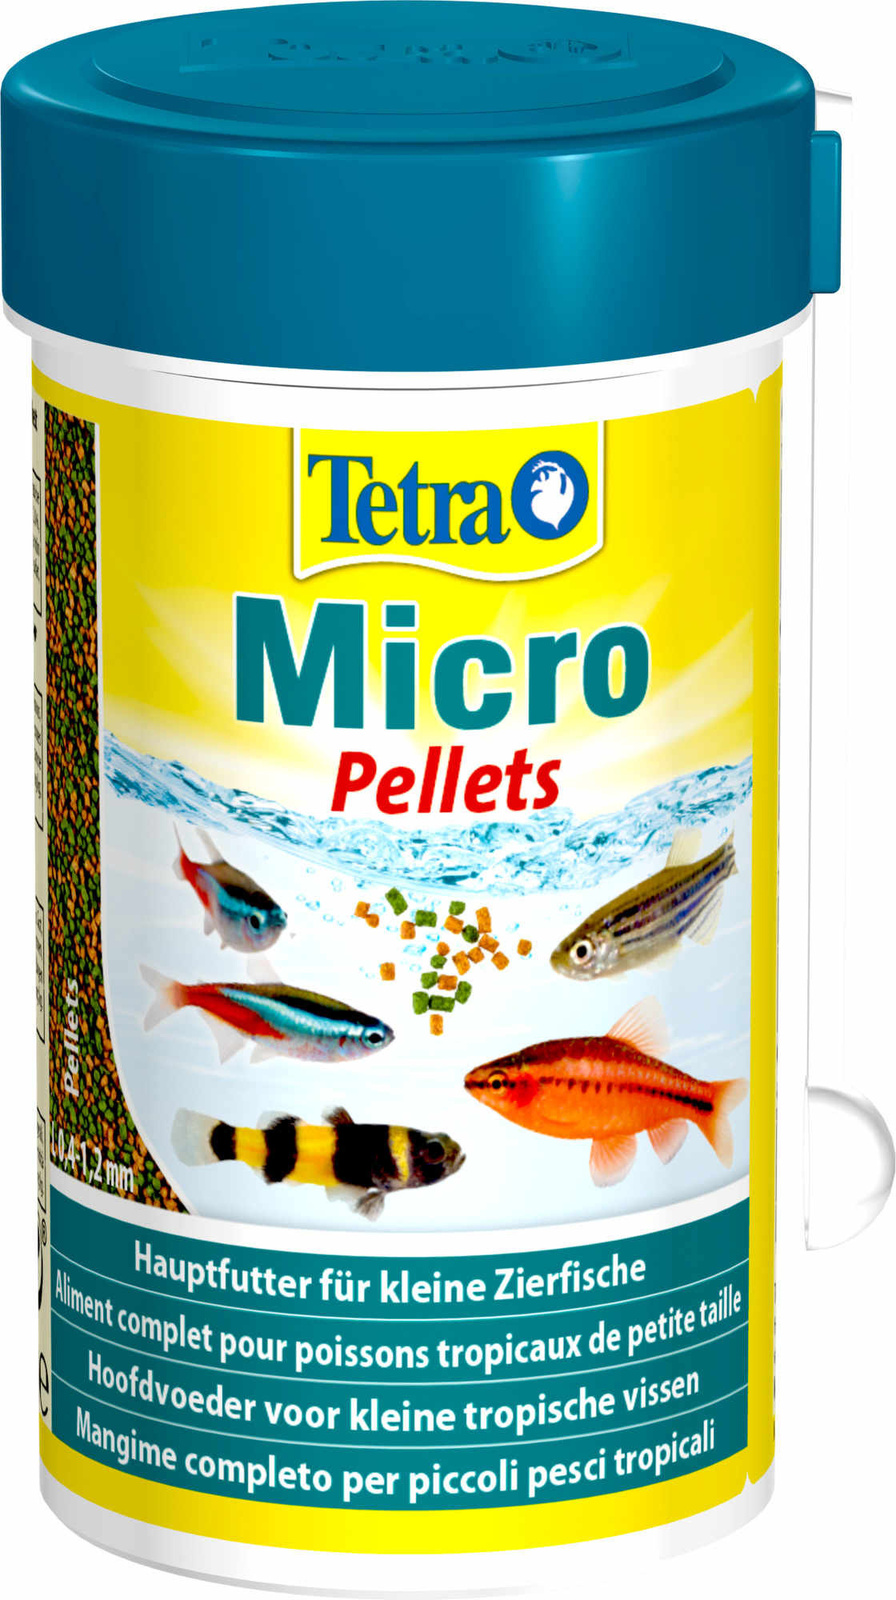 Tetra (корма) Tetra (корма) корм для для всех видов мелких рыб, микрошарики (65 г) tetra корма tetra корма корм для всех видов мелких рыб четыре вида корма 65 г